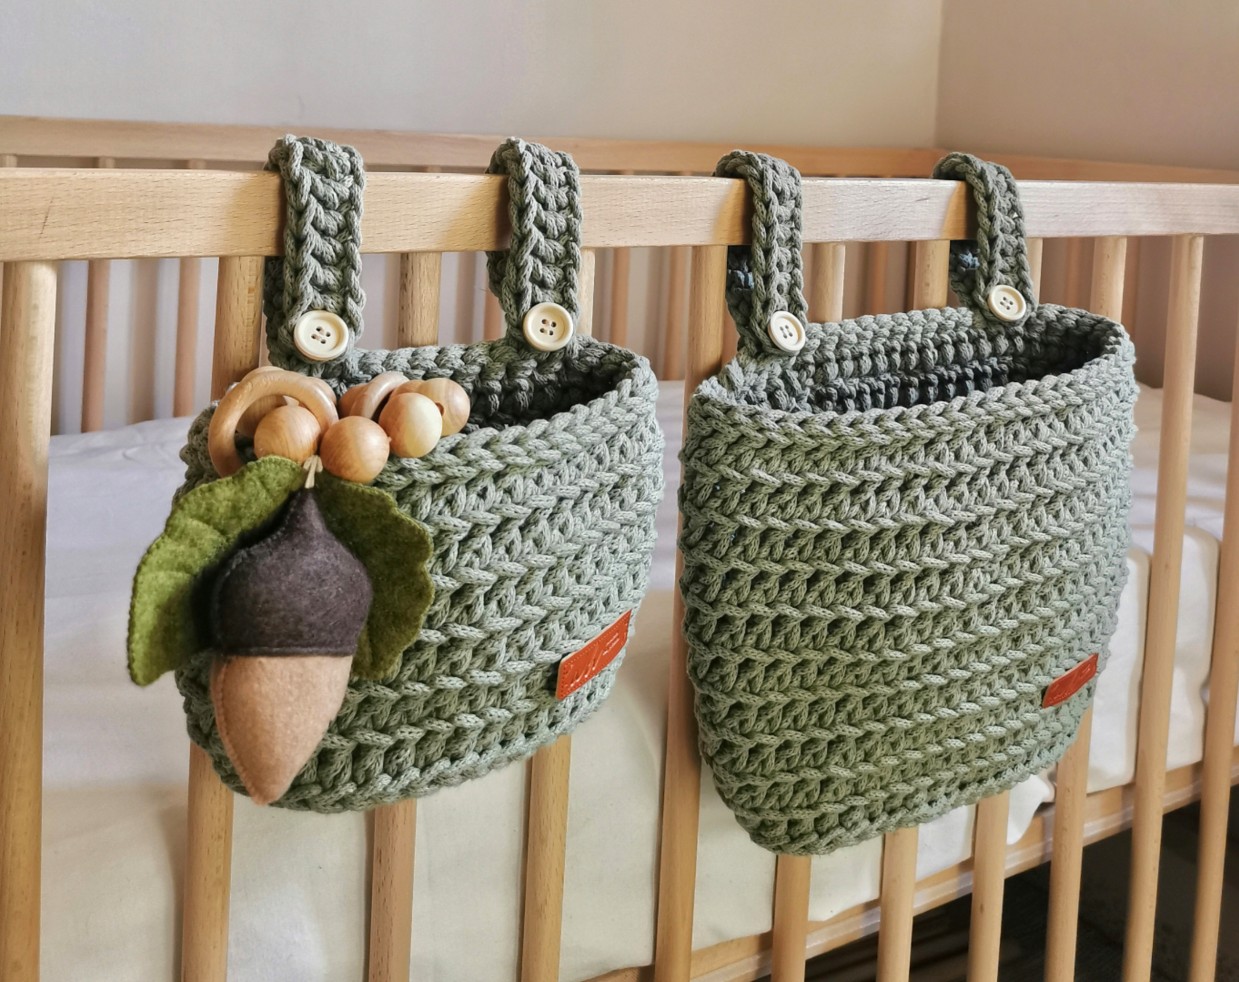  Set of Hanging Crib Baskets "Green"